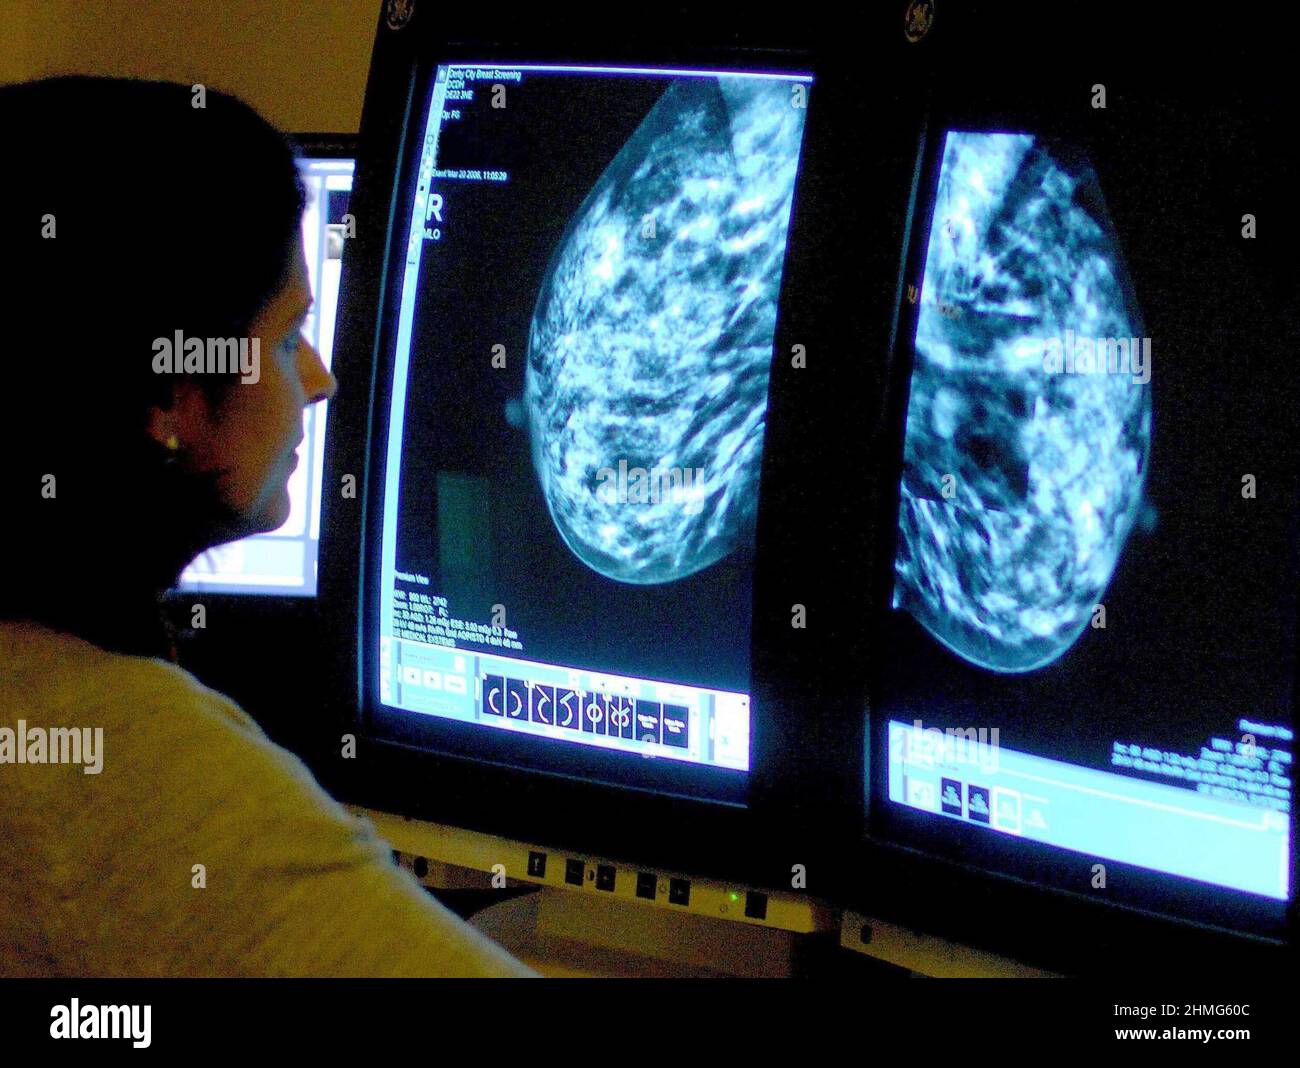 Foto del expediente fechada el 15/06/06 de un consultor que analiza una mamografía. Una poderosa combinación de medicamentos para el cáncer de mama podría salvar miles de vidas, según los nuevos resultados de un estudio a largo plazo. Fecha de emisión: Jueves 10 de febrero de 2022. Foto de stock